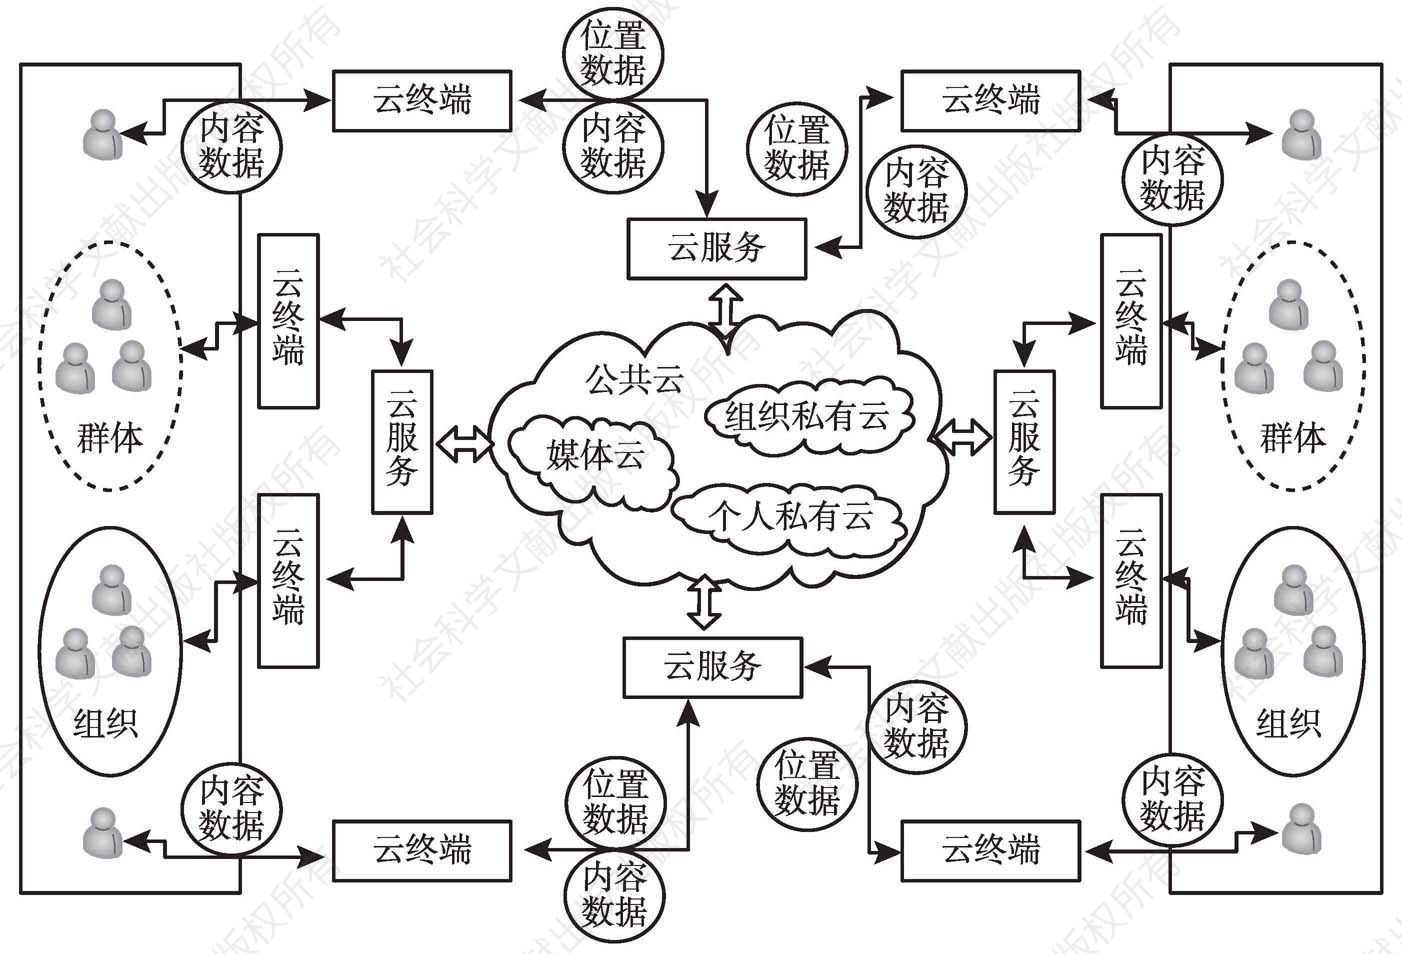 图1 云传播模式的系统模型